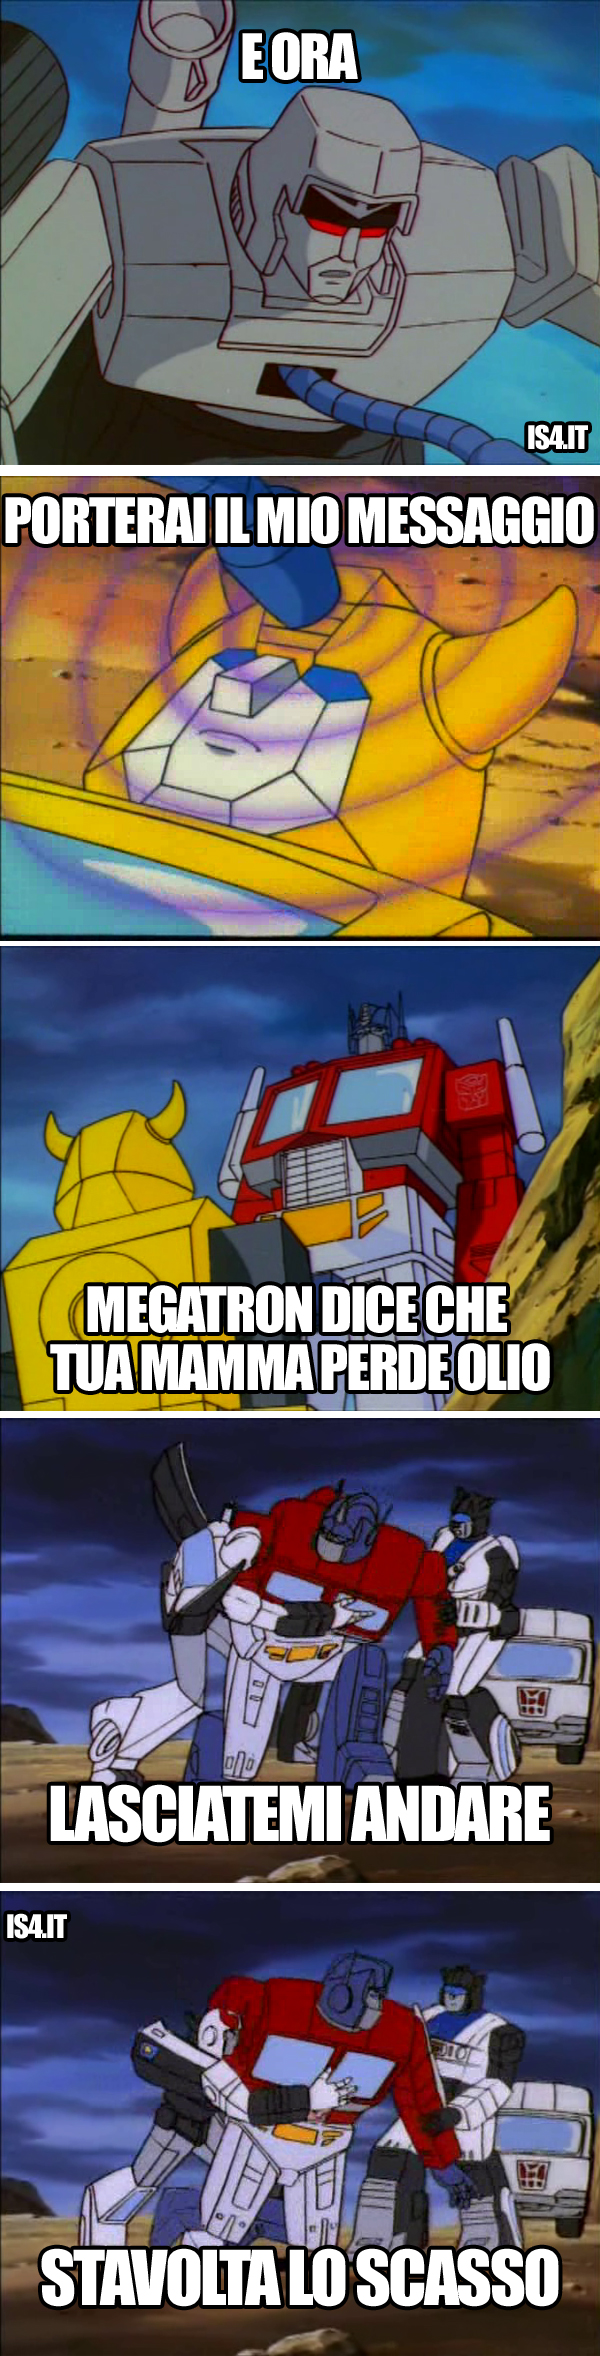 Transformers meme ita - Il messaggio